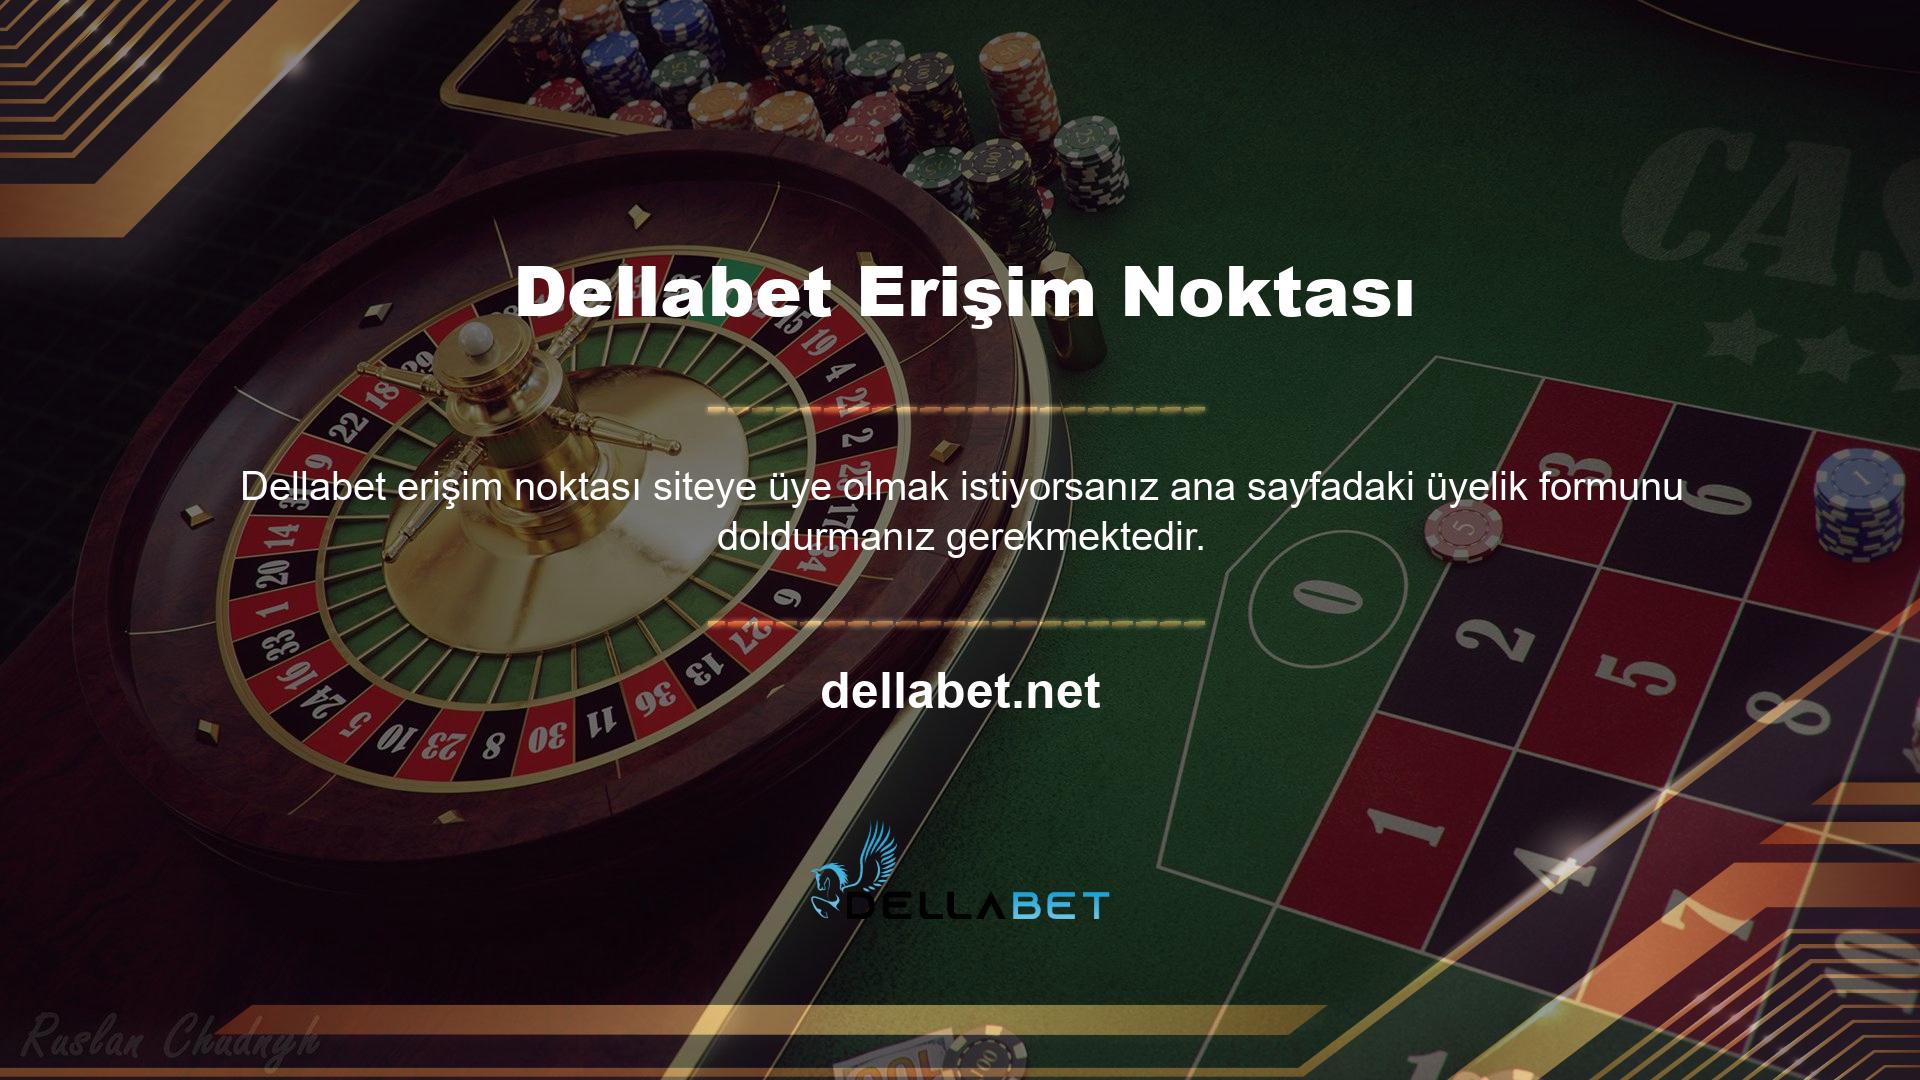 Online casino sitelerinde ekstra avantajlar ve bonuslar sunulmaktadır